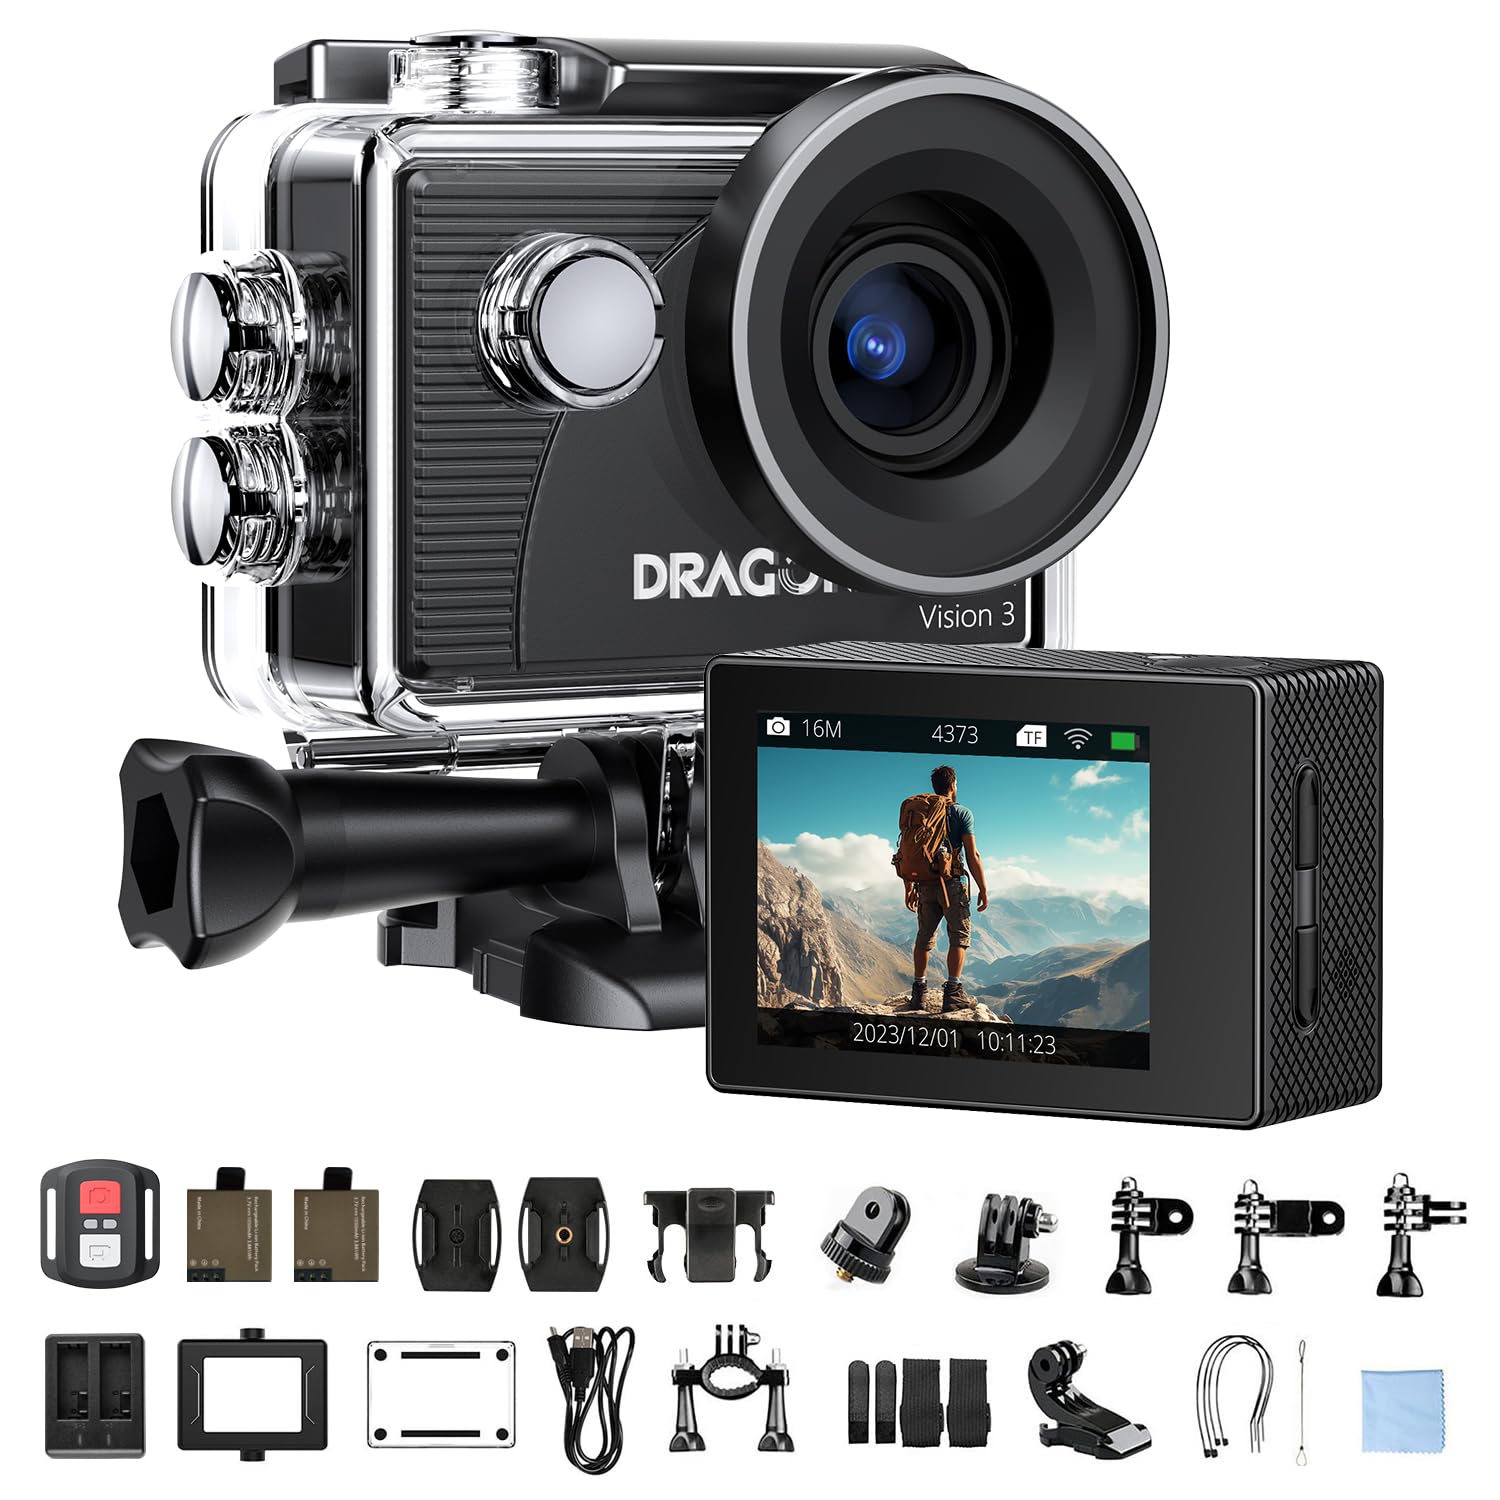 Dragon Touch アクションカメラ 4K30FPS 2000万画素 30m水中カメラ 170度広角レンズ タイムプラス動画 ウェアラブルカメラ 1050mAhバッテリー2個 手ぶれ補正 HDMI出力 4xズーム リモコン付き アクションカム Vision3